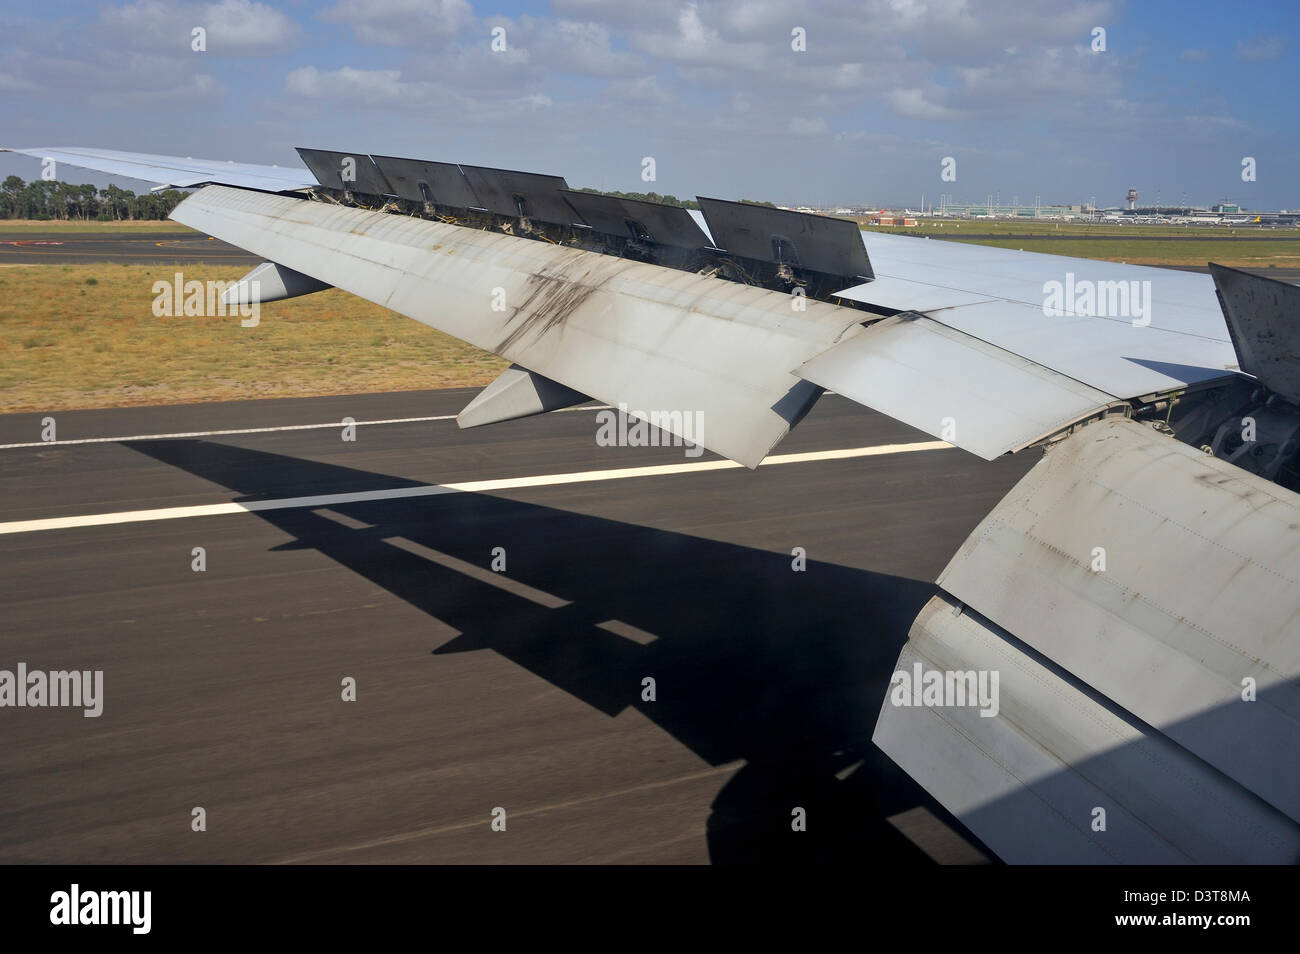 Flügel eines Flugzeugs der Landung auf einem Flughafen Landebahn Stockfoto